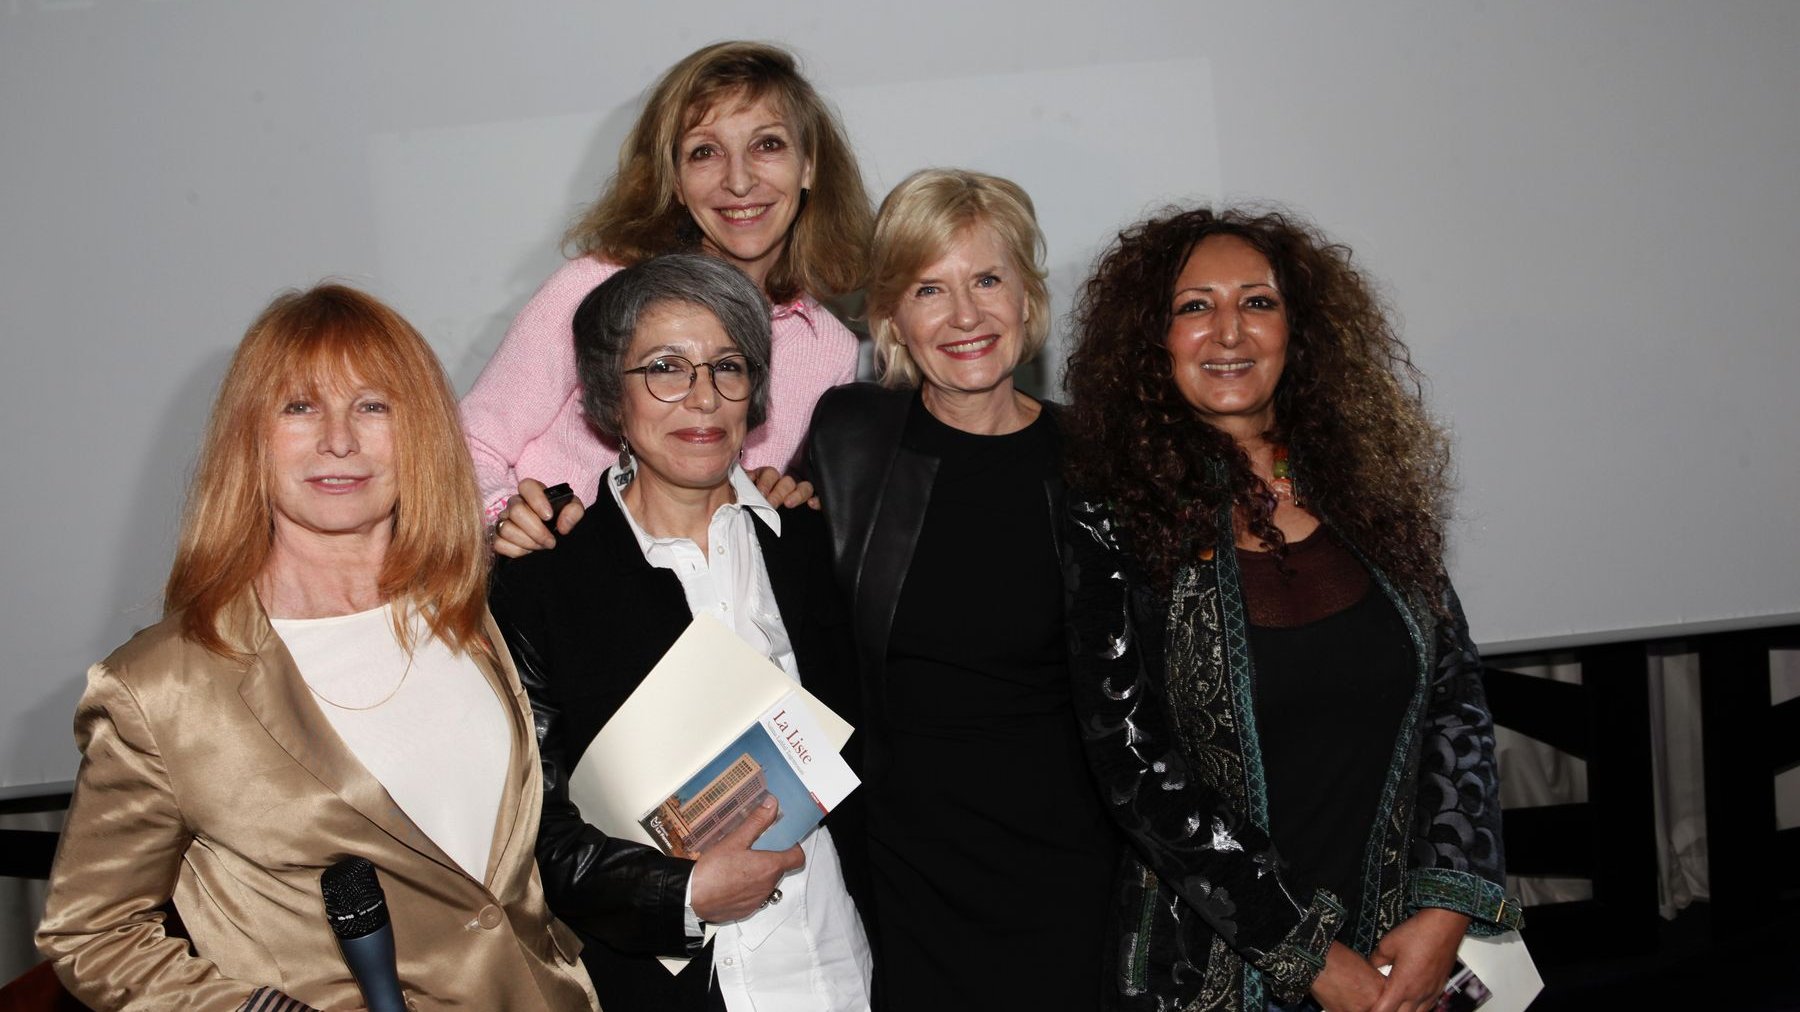 Bouthaina Azami, auteur de "Au café des faits divers" a séduit le jury de cette 2e édition du prix littéraire féminin du Sofitel. Naïma Lahbil Tagemouati a décroché le deuxième prix avec son roman (La liste).
